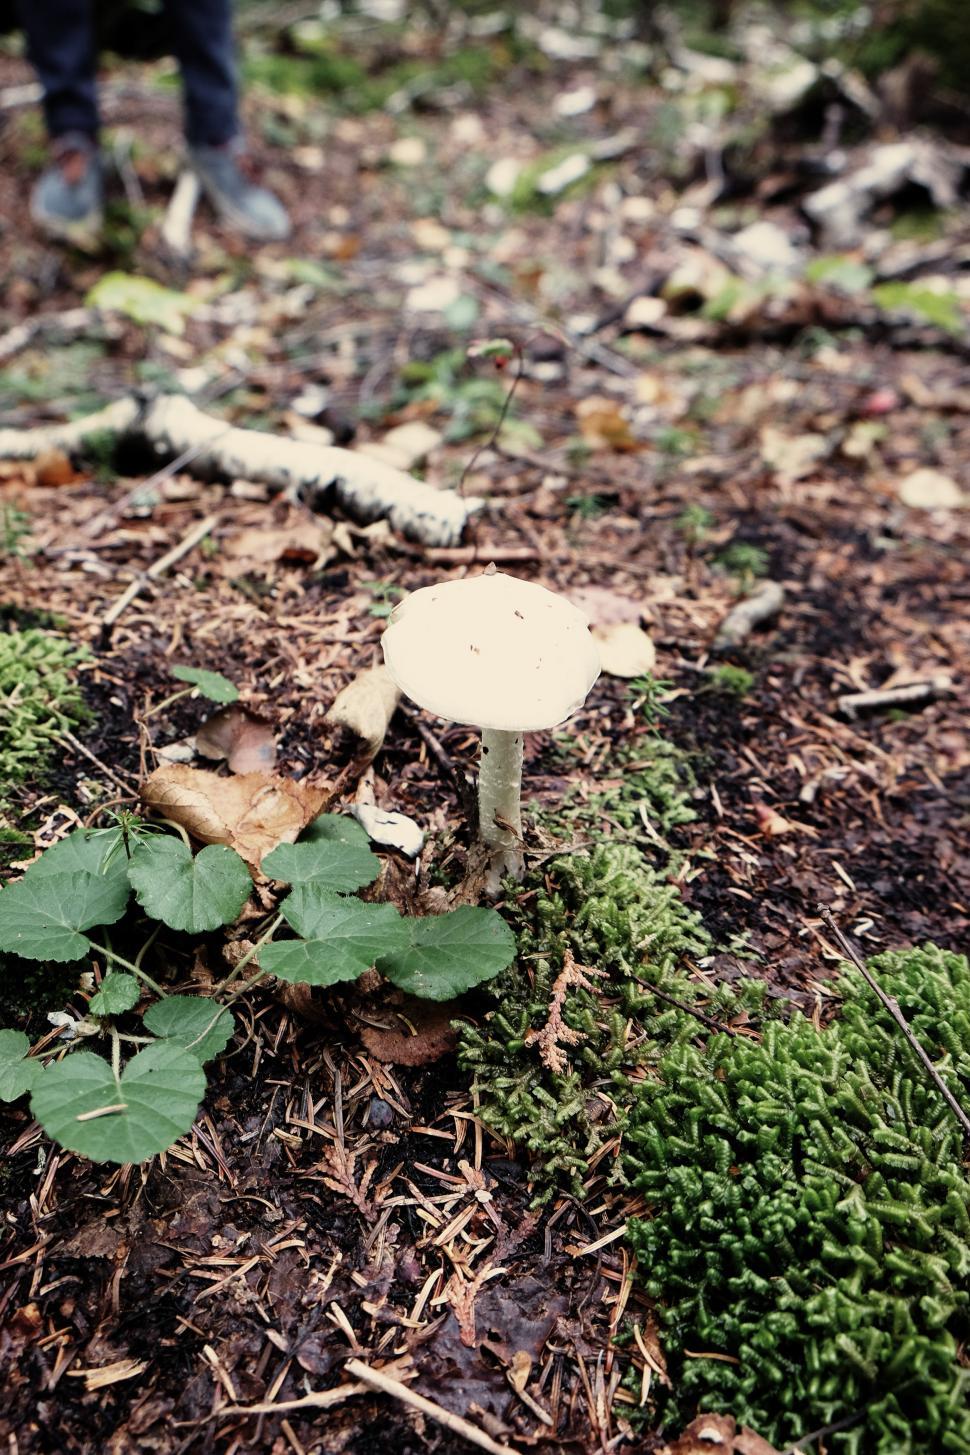 Free Image of Mushroom Resting on Forest Floor 